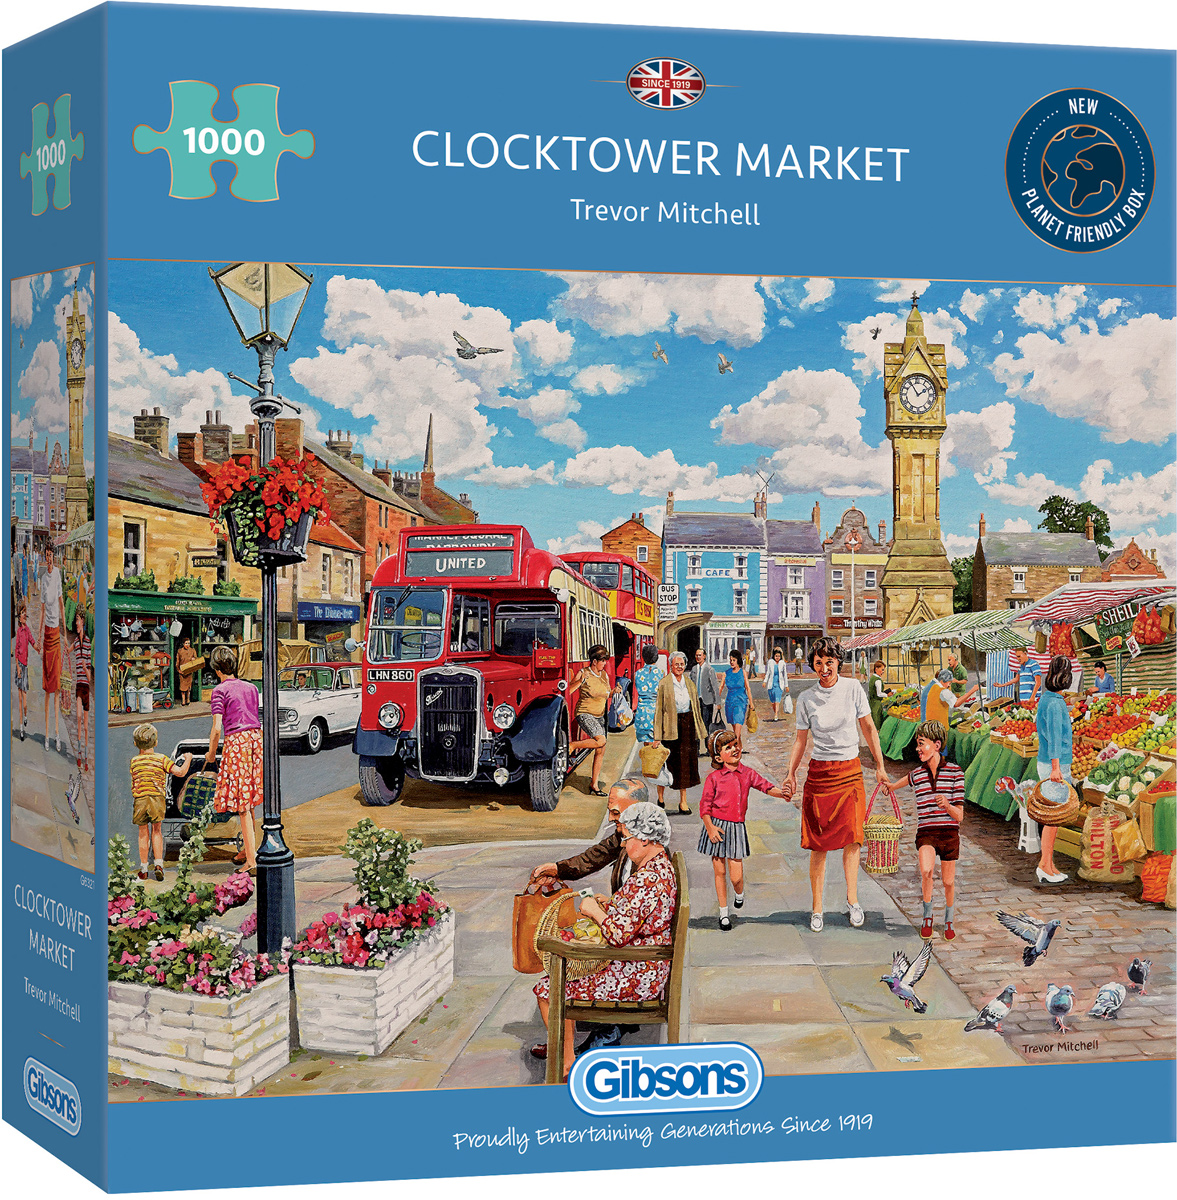 Clocktower Market